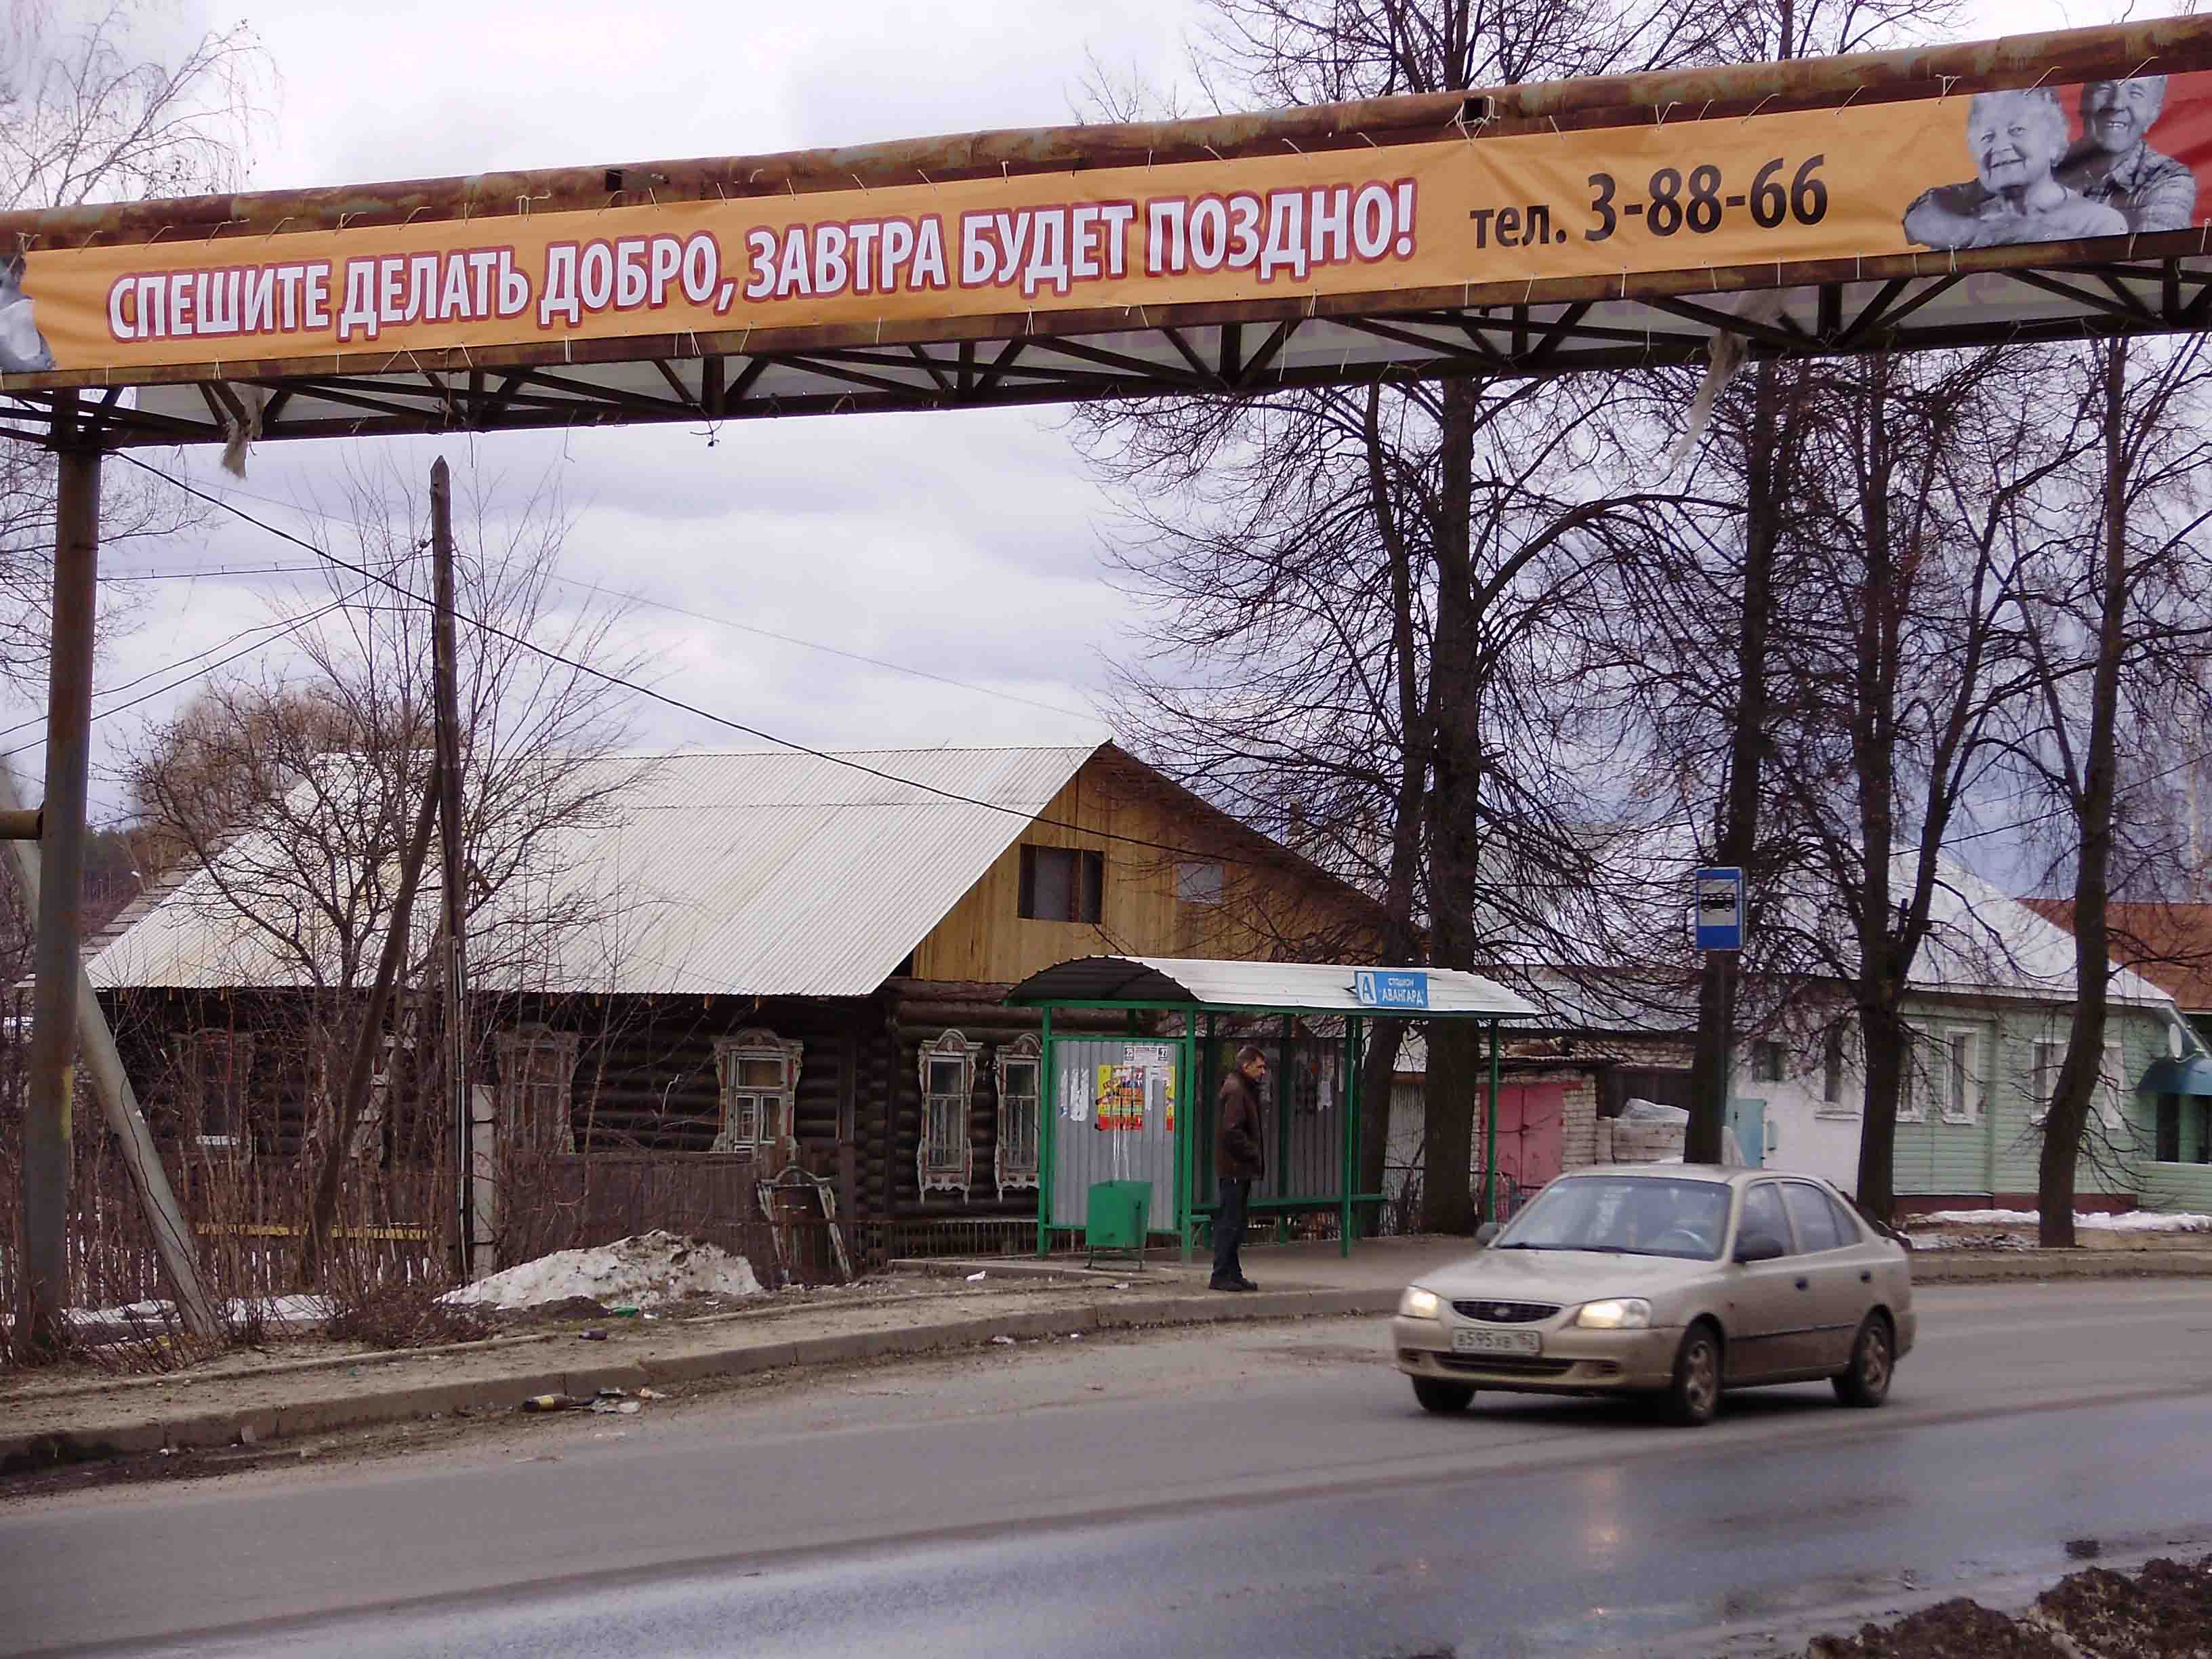 Реклама православного молодежного волонтерского движения в г. Выксе